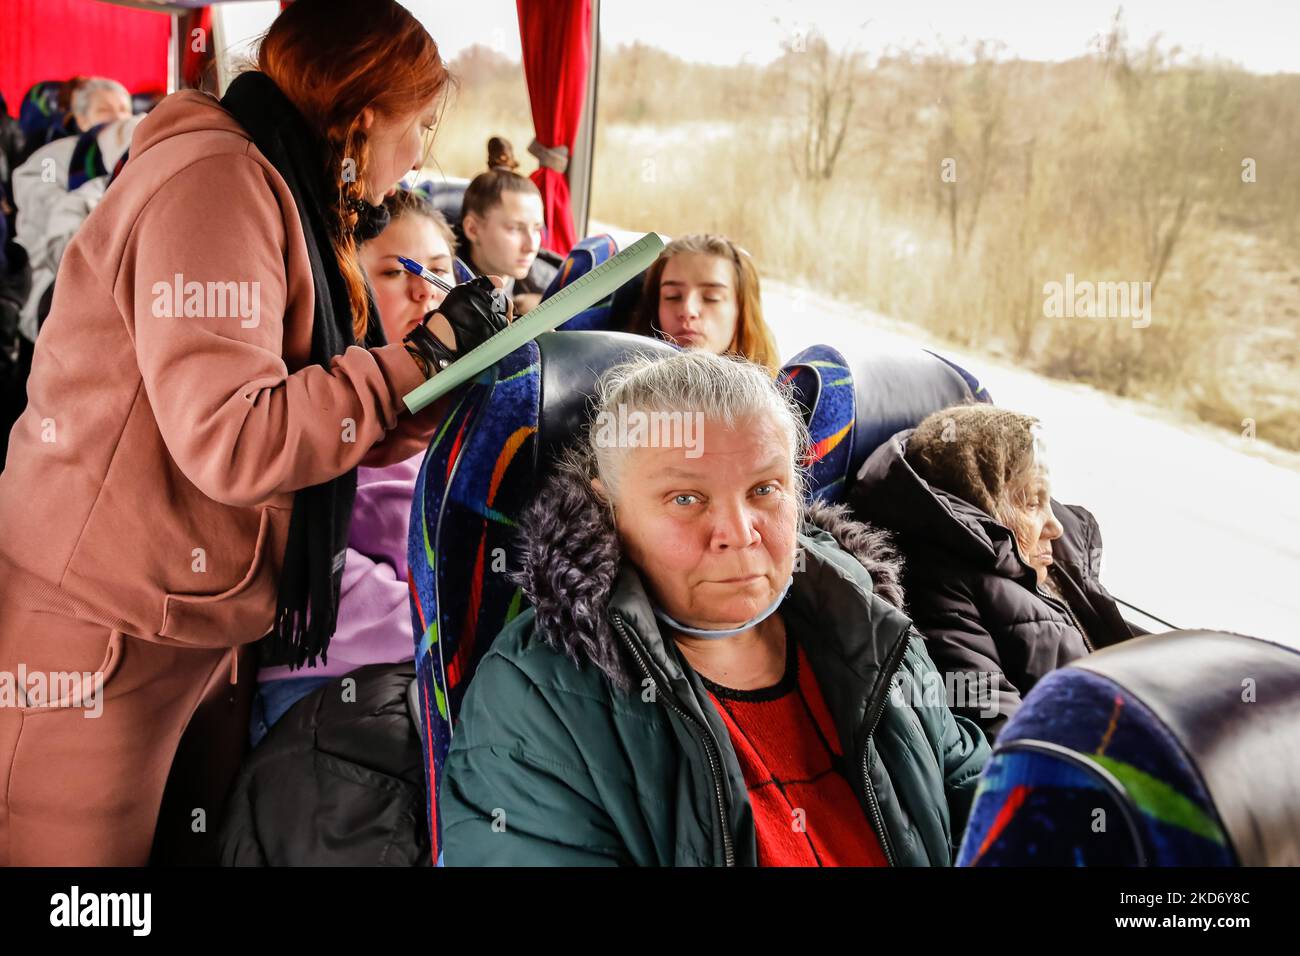 Una donna Ucraina, Olga Oszal dell'agenzia di viaggio Abdar a Cracovia, Polonia fa la lista dei rifugiati che l'agenzia ha preso da Lviv, Ucraina mentre partono dalla città per la Polonia, come più di due milioni di persone hanno già fuggito l'Ucraina per la Polonia, 5 aprile 2022. Mentre la Federazione Russa invase l'Ucraina, il conflitto dovrebbe costringere fino a 5 milioni di ucraini a fuggire dal paese. Molti rifugiati cercano asilo in Polonia. La maggior parte degli aiuti di beneficenza in Polonia è fornita da individui, ONG e imprese. Abdar agenzia di viaggi è un business gestito da matrimonio misto - ucraino Olga e Maciej polacco Foto Stock